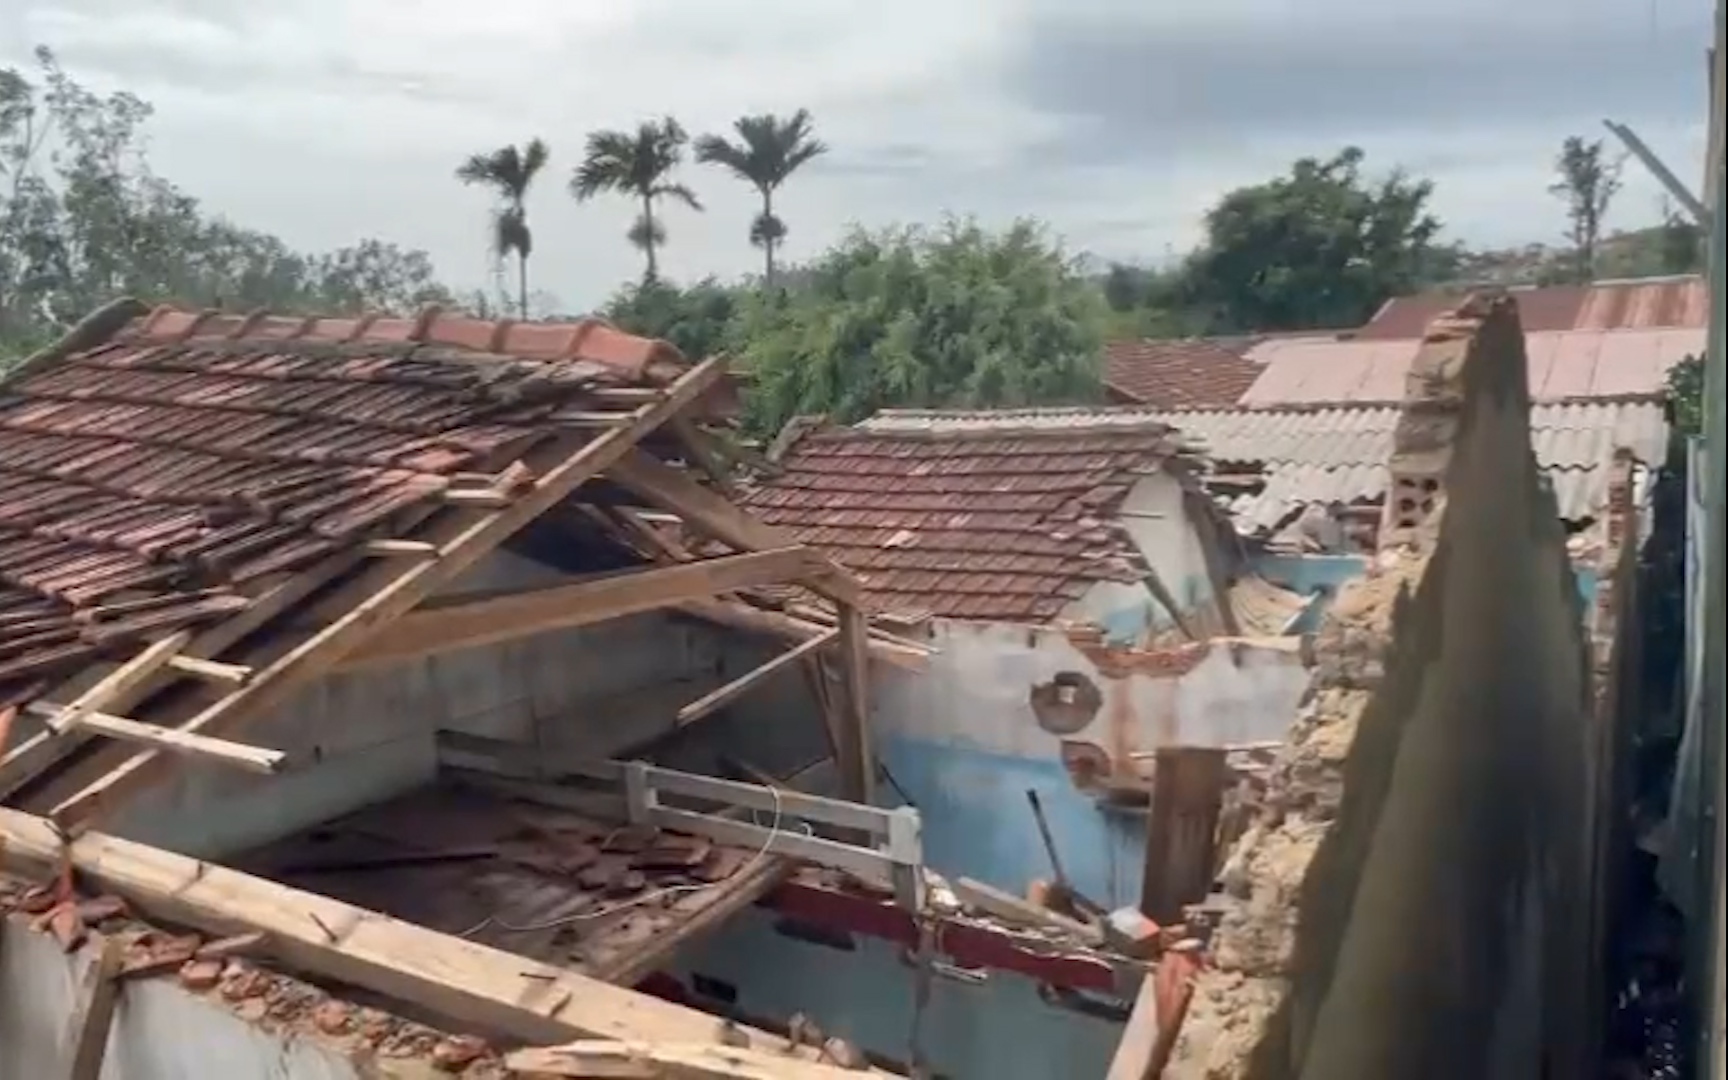 Quảng Ngãi: Công trình bị tháo dỡ nửa vời, cặp vợ chồng suýt mất mạng vì bão